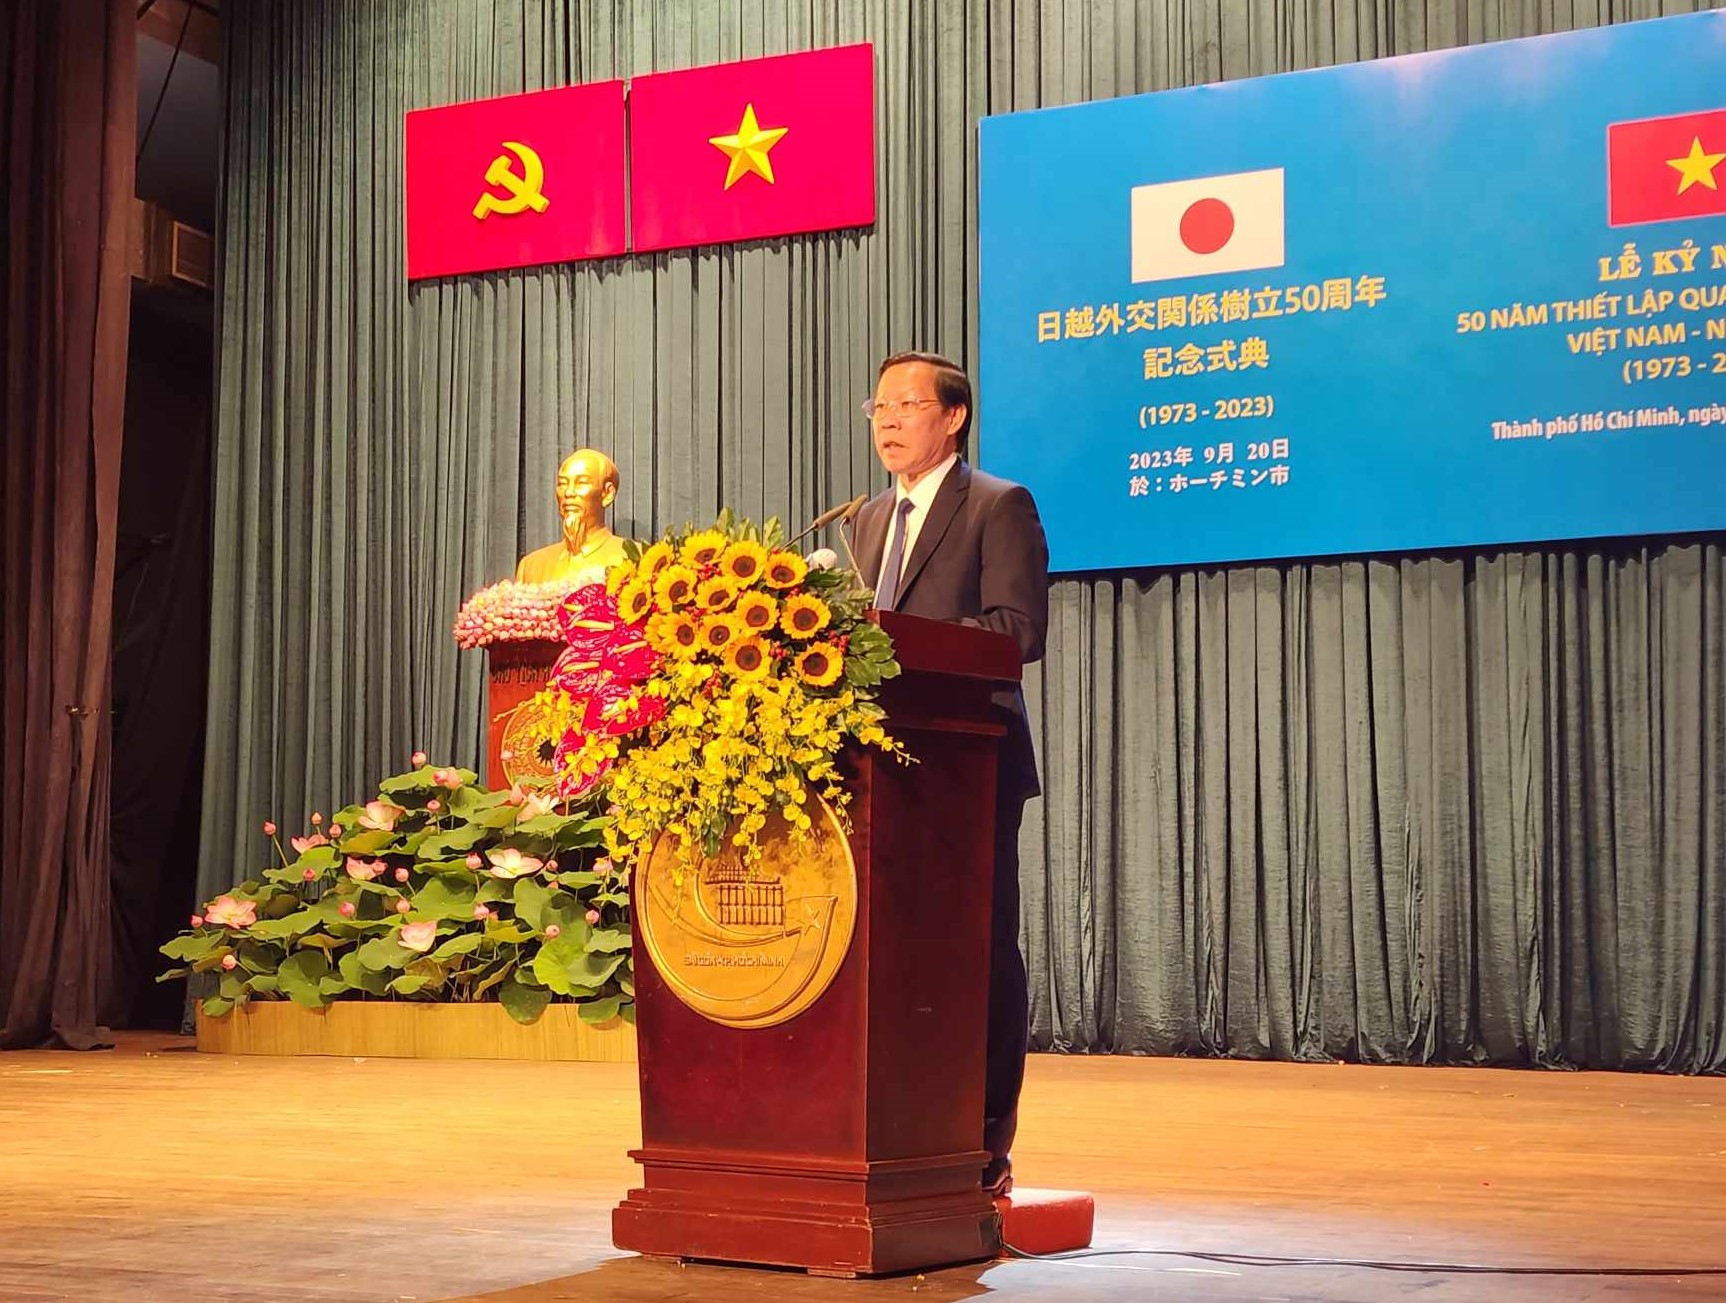 Ông Phan Văn Mãi nhắc lại truyền thống quan hệ tốt đẹp giữa 2 nước trong buổi lễ kỷ niệm 50 năm quan hệ song phương Việt Nam - Nhật Bản